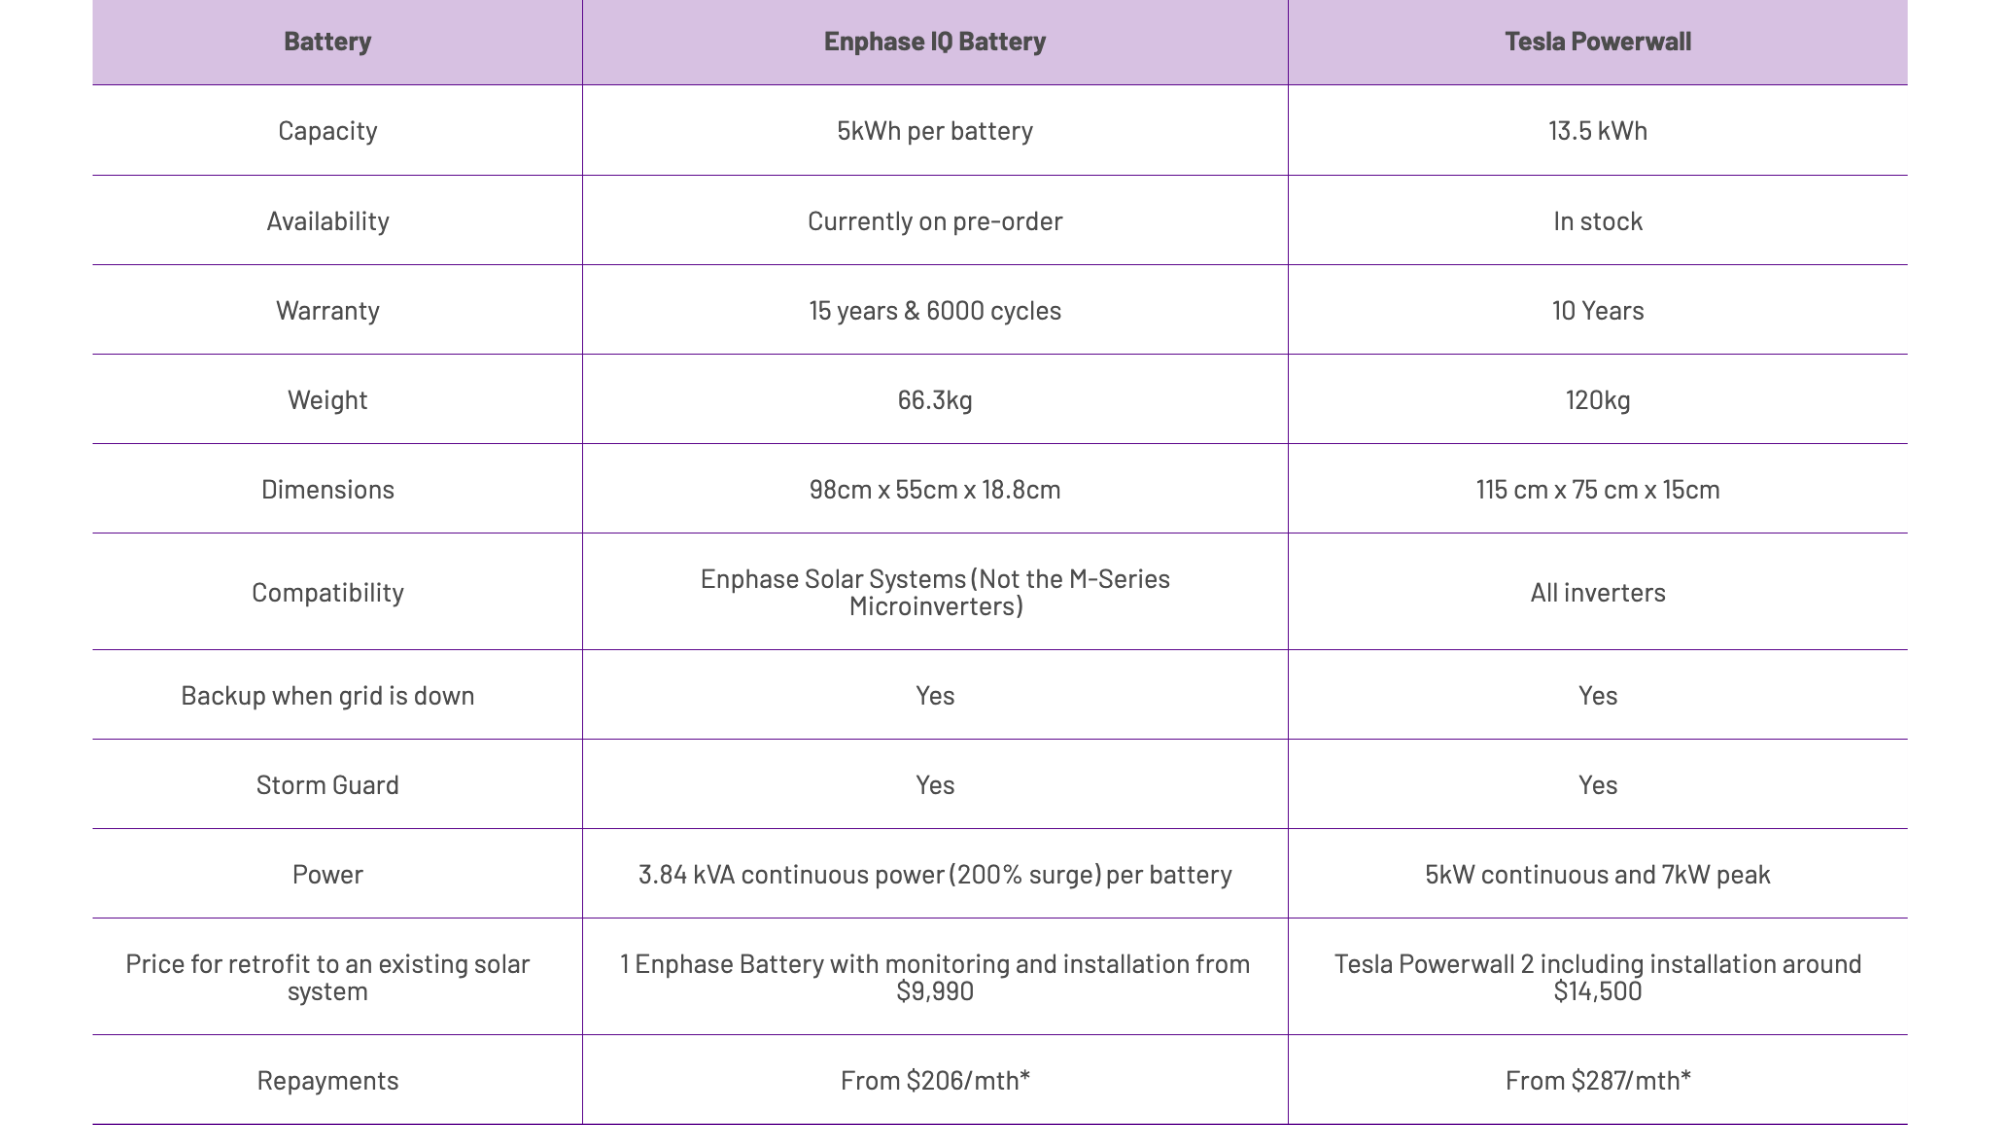 Batteries Comparison - Enphase vs Tesla